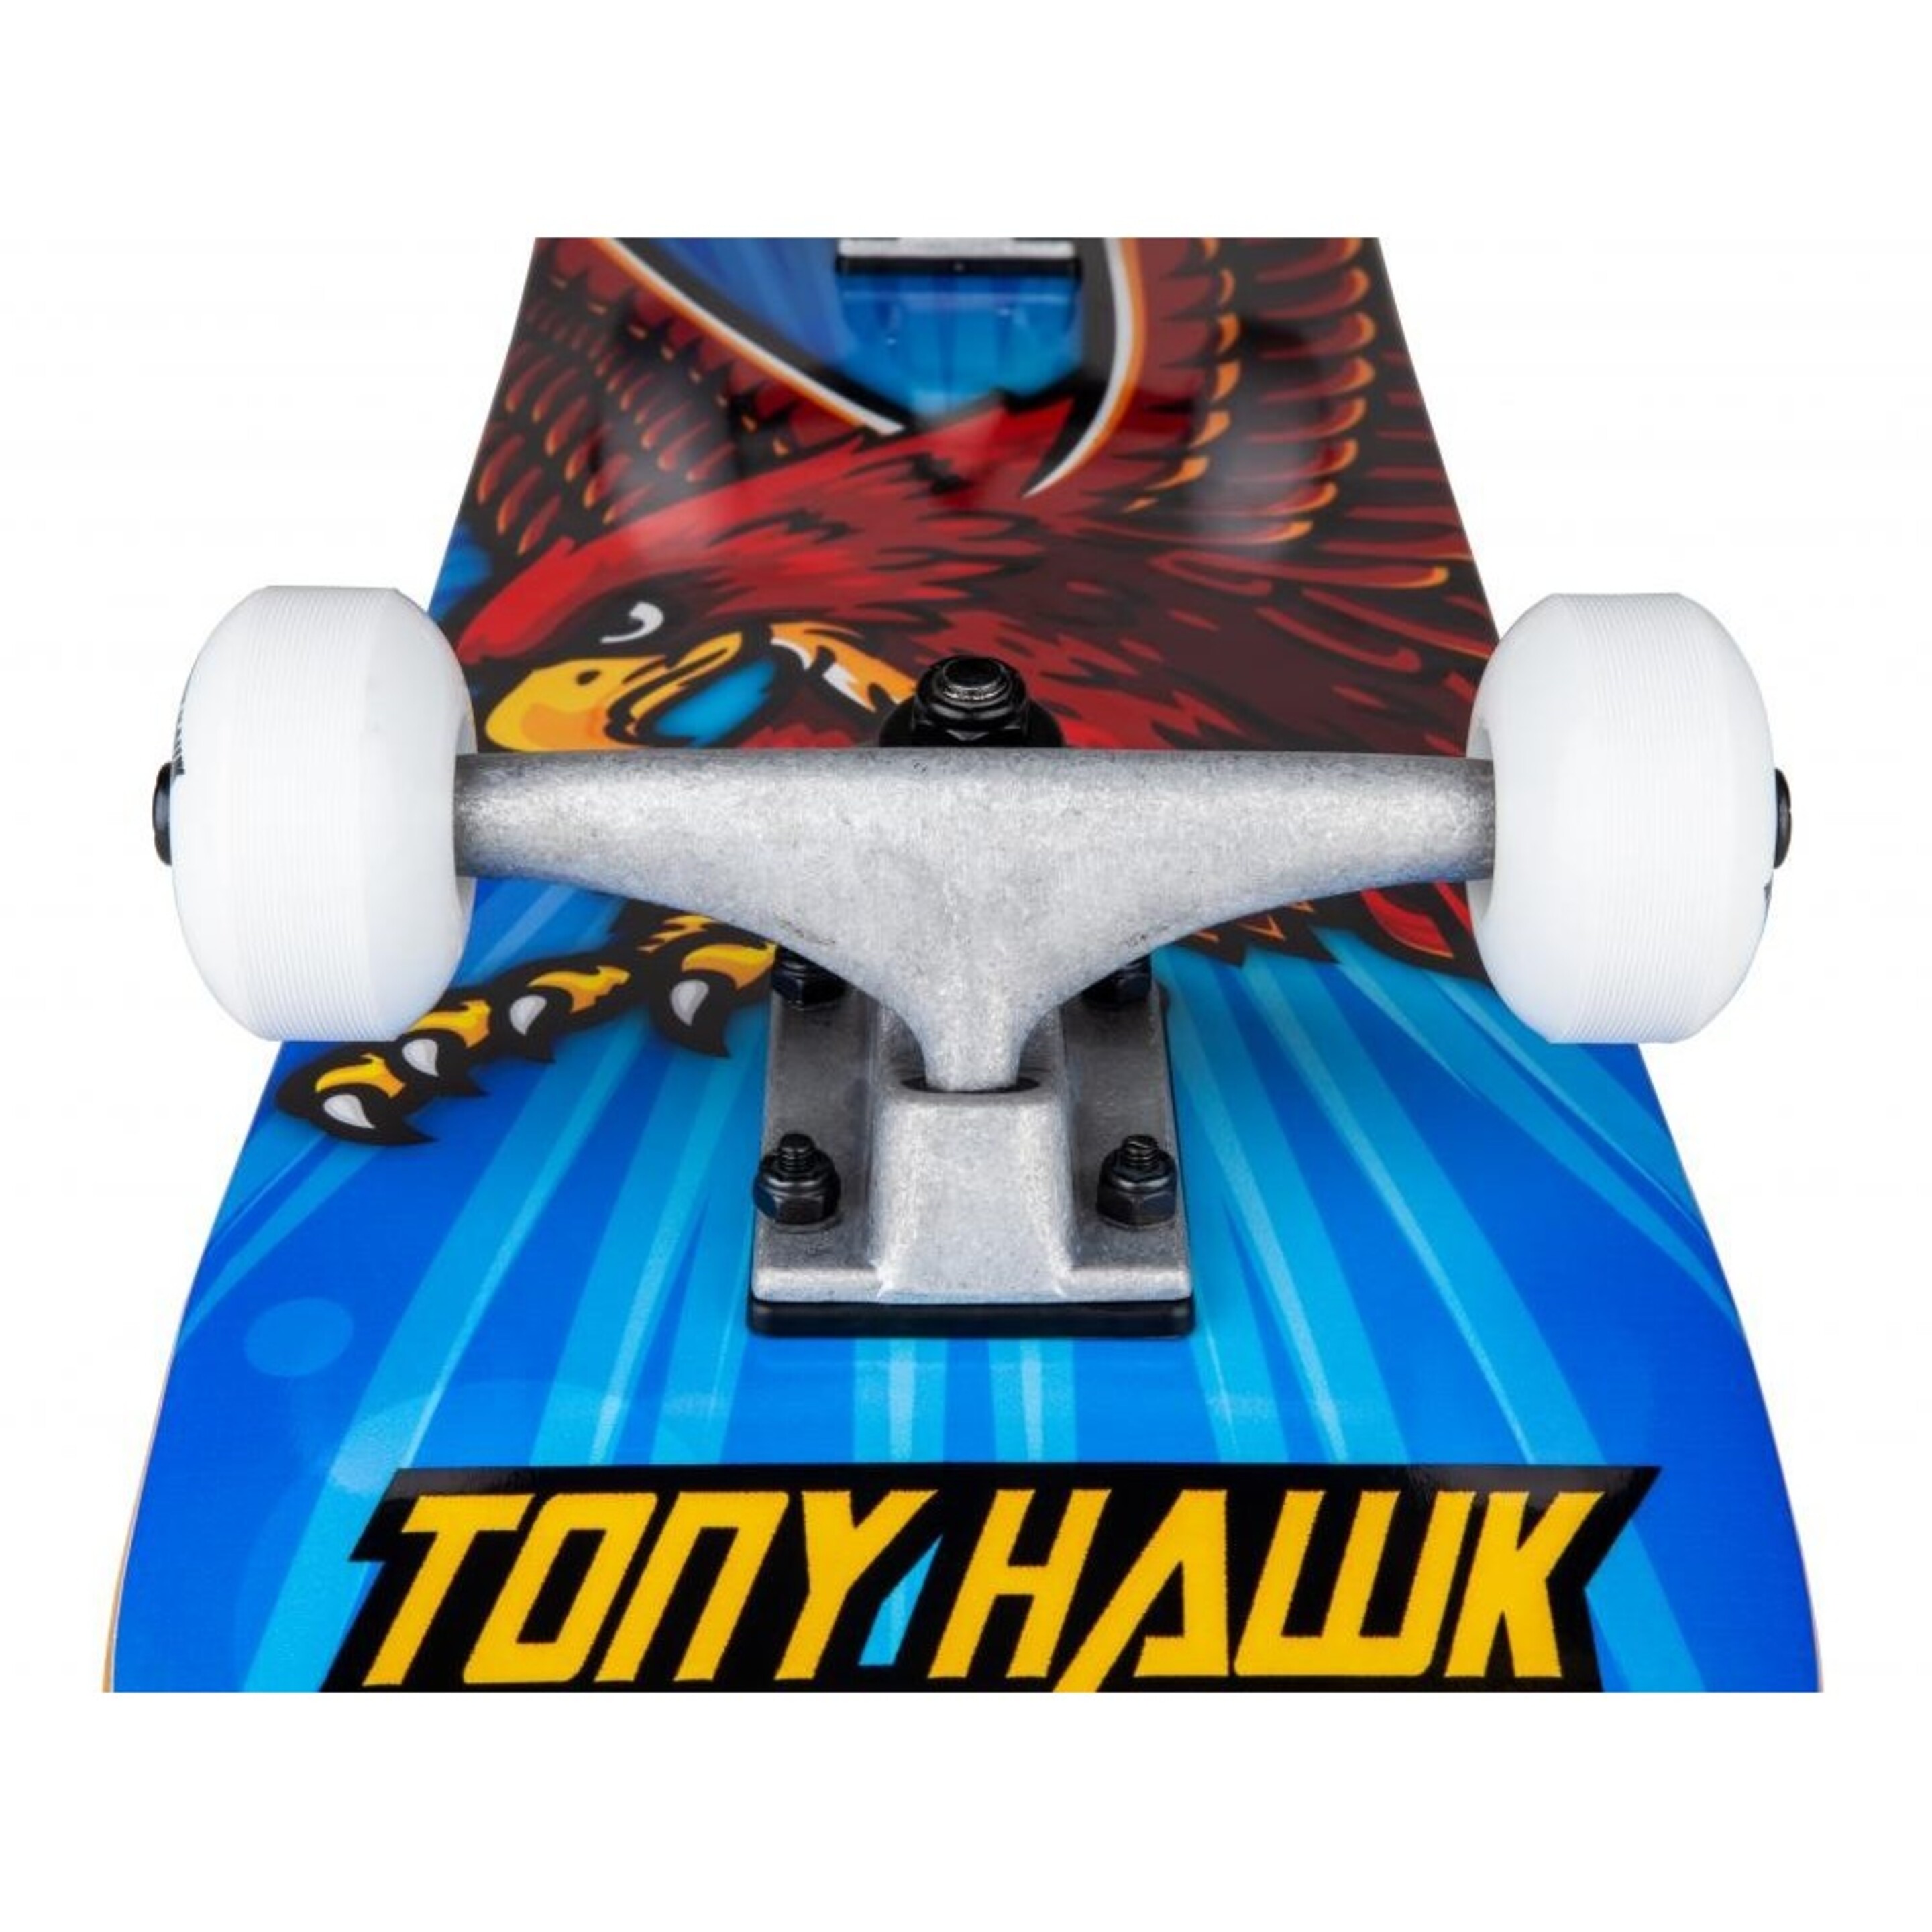 Skate Completo Tony Hawk Ss 180 King Hawk Mini 7.375"